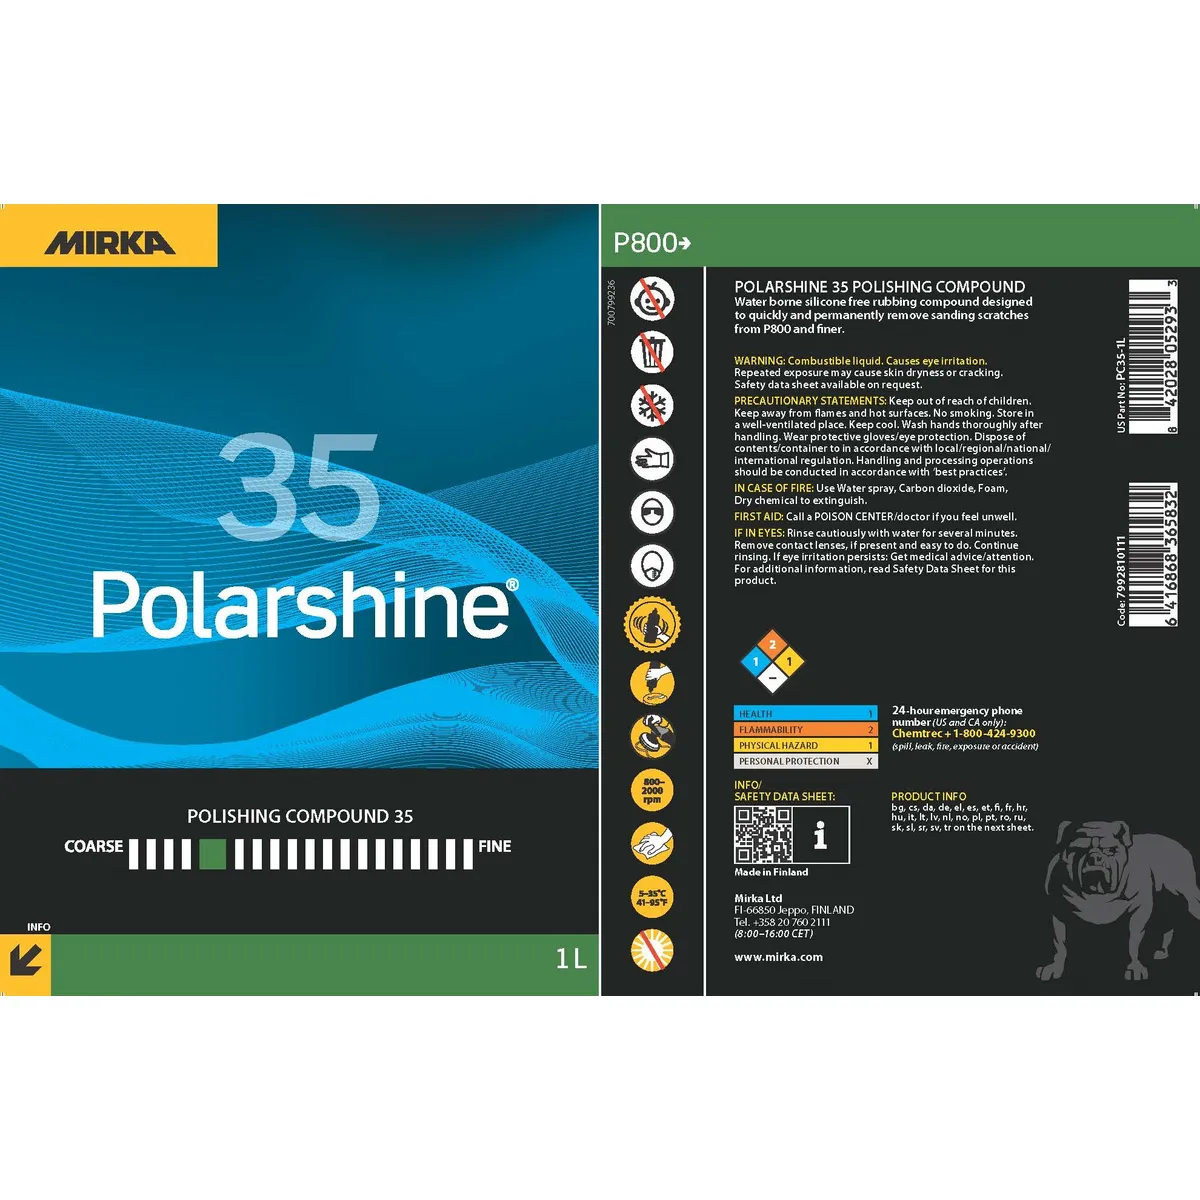 Pasta polish, Mirka Polarshine® 35 Polishing Compound, compus de lustruire grosier dezvoltat pentru aplicații industriale și marine solicitante, gramaj 1 litru [1]